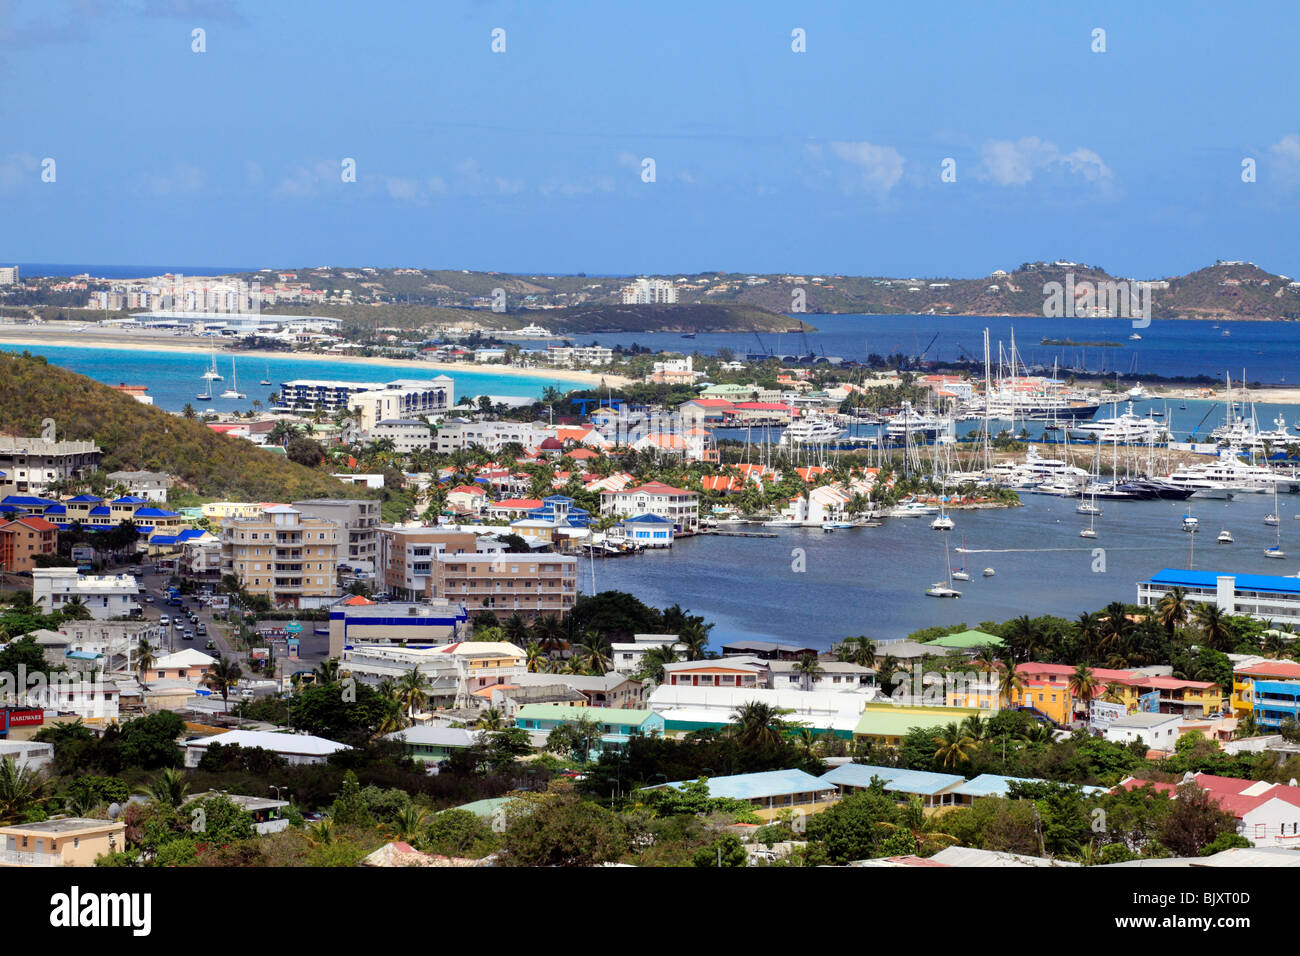 Simpson Bay und Marina in St. Maarten. Karibik Stockfoto